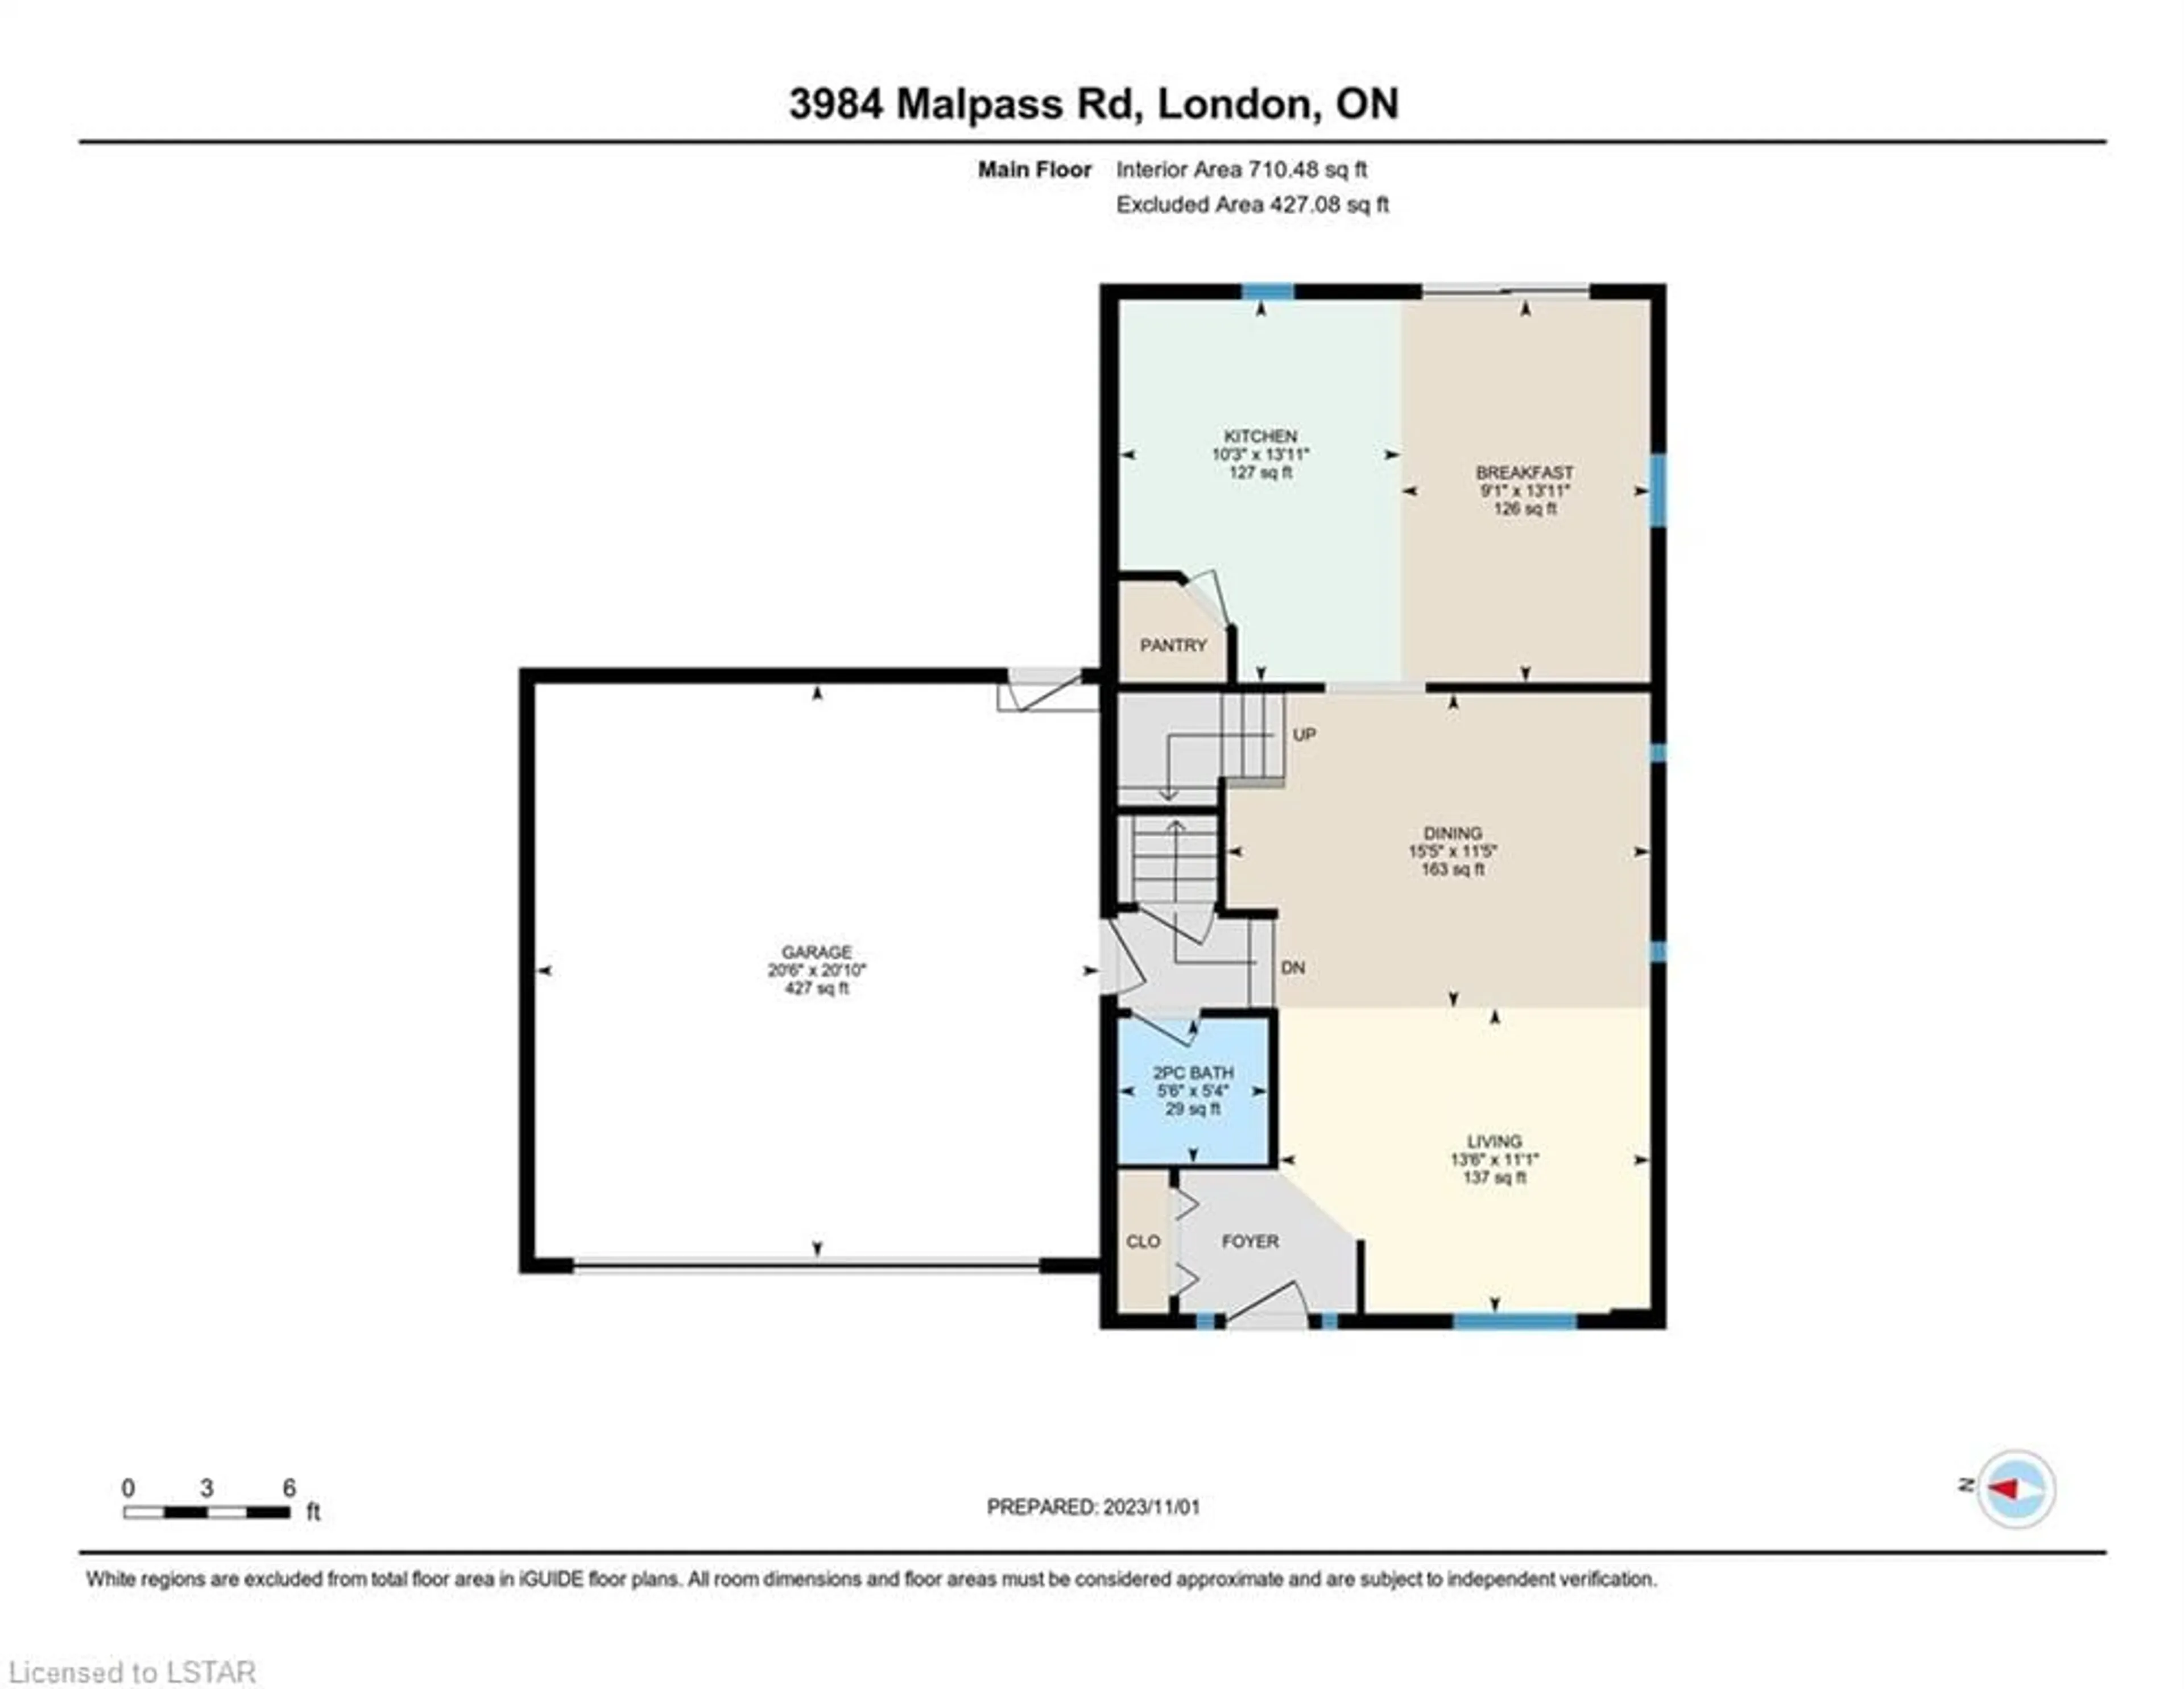 Floor plan for 3984 Malpass Rd, London Ontario N6E 1E7